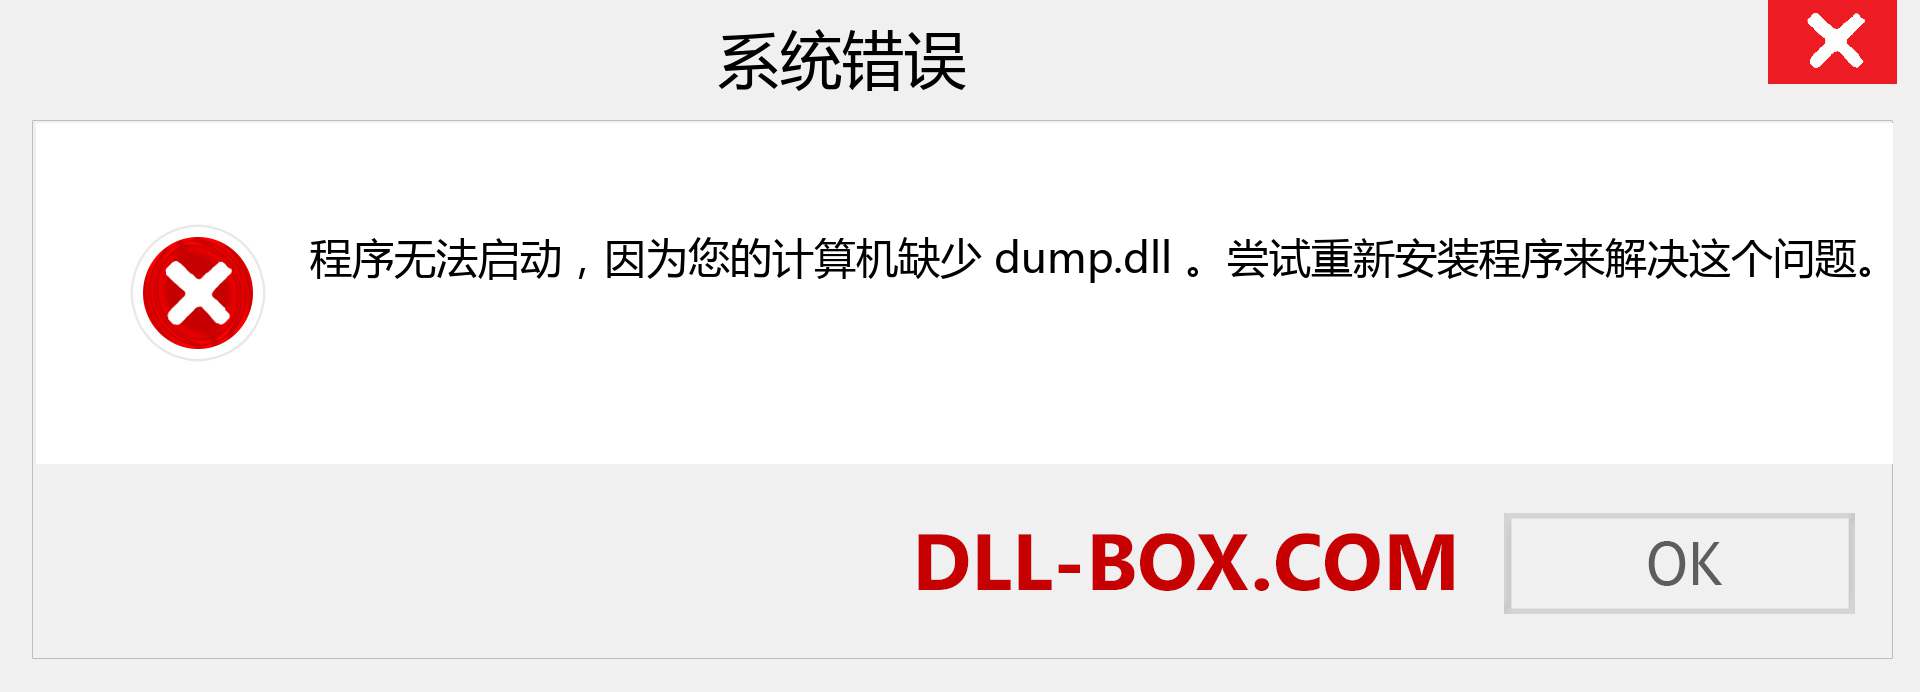 dump.dll 文件丢失？。 适用于 Windows 7、8、10 的下载 - 修复 Windows、照片、图像上的 dump dll 丢失错误